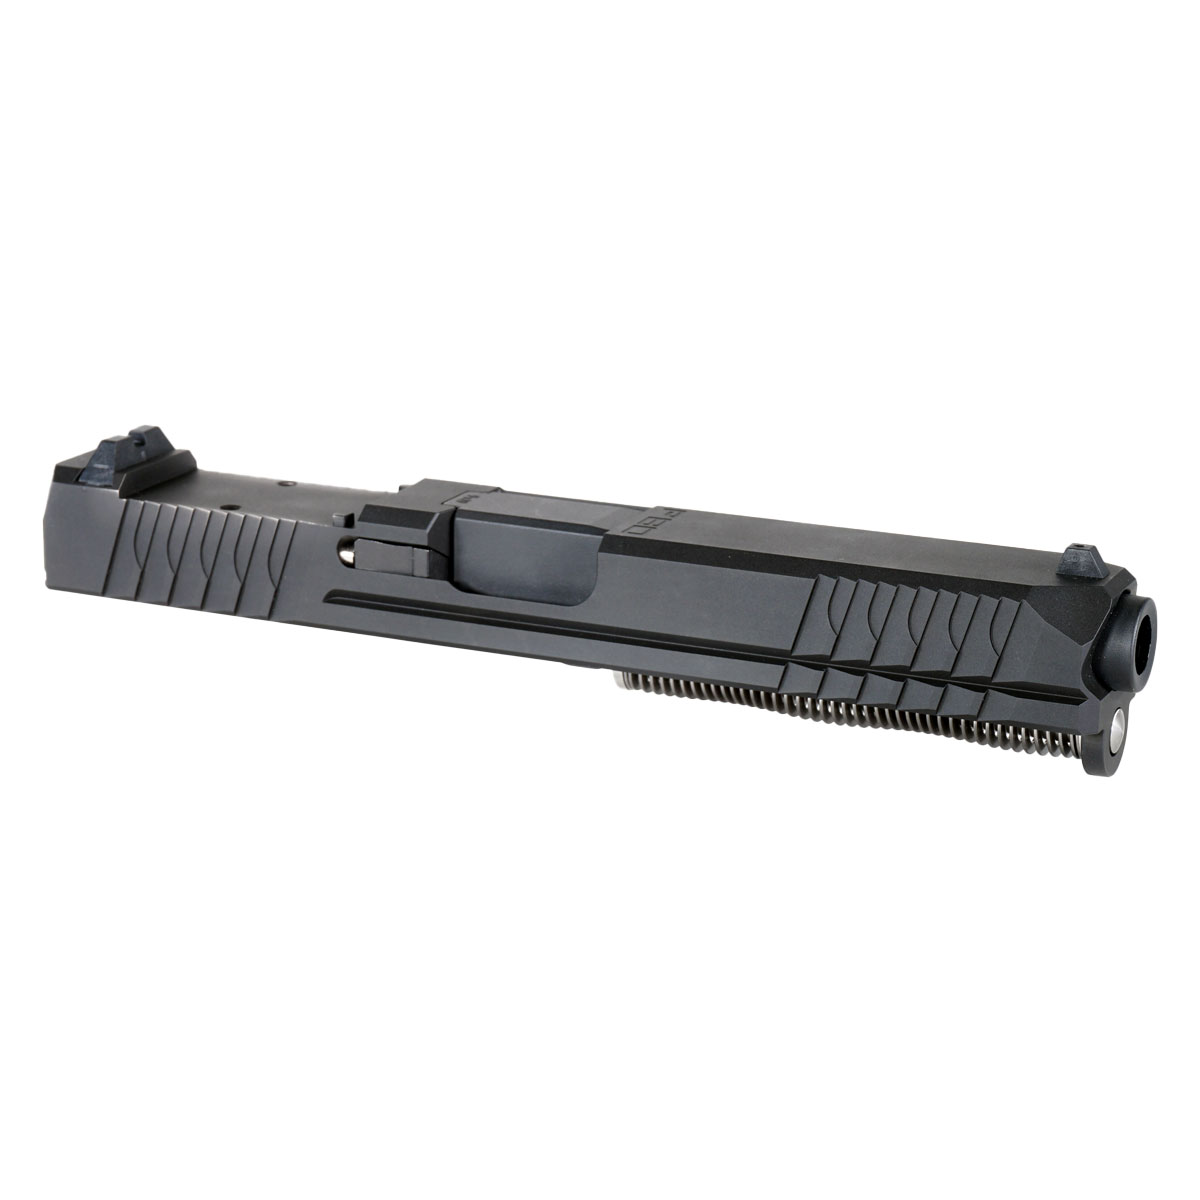 MMC 'Terrafluid' 9mm Complete Slide Kit - Glock 17 Gen 1-3 Compatible